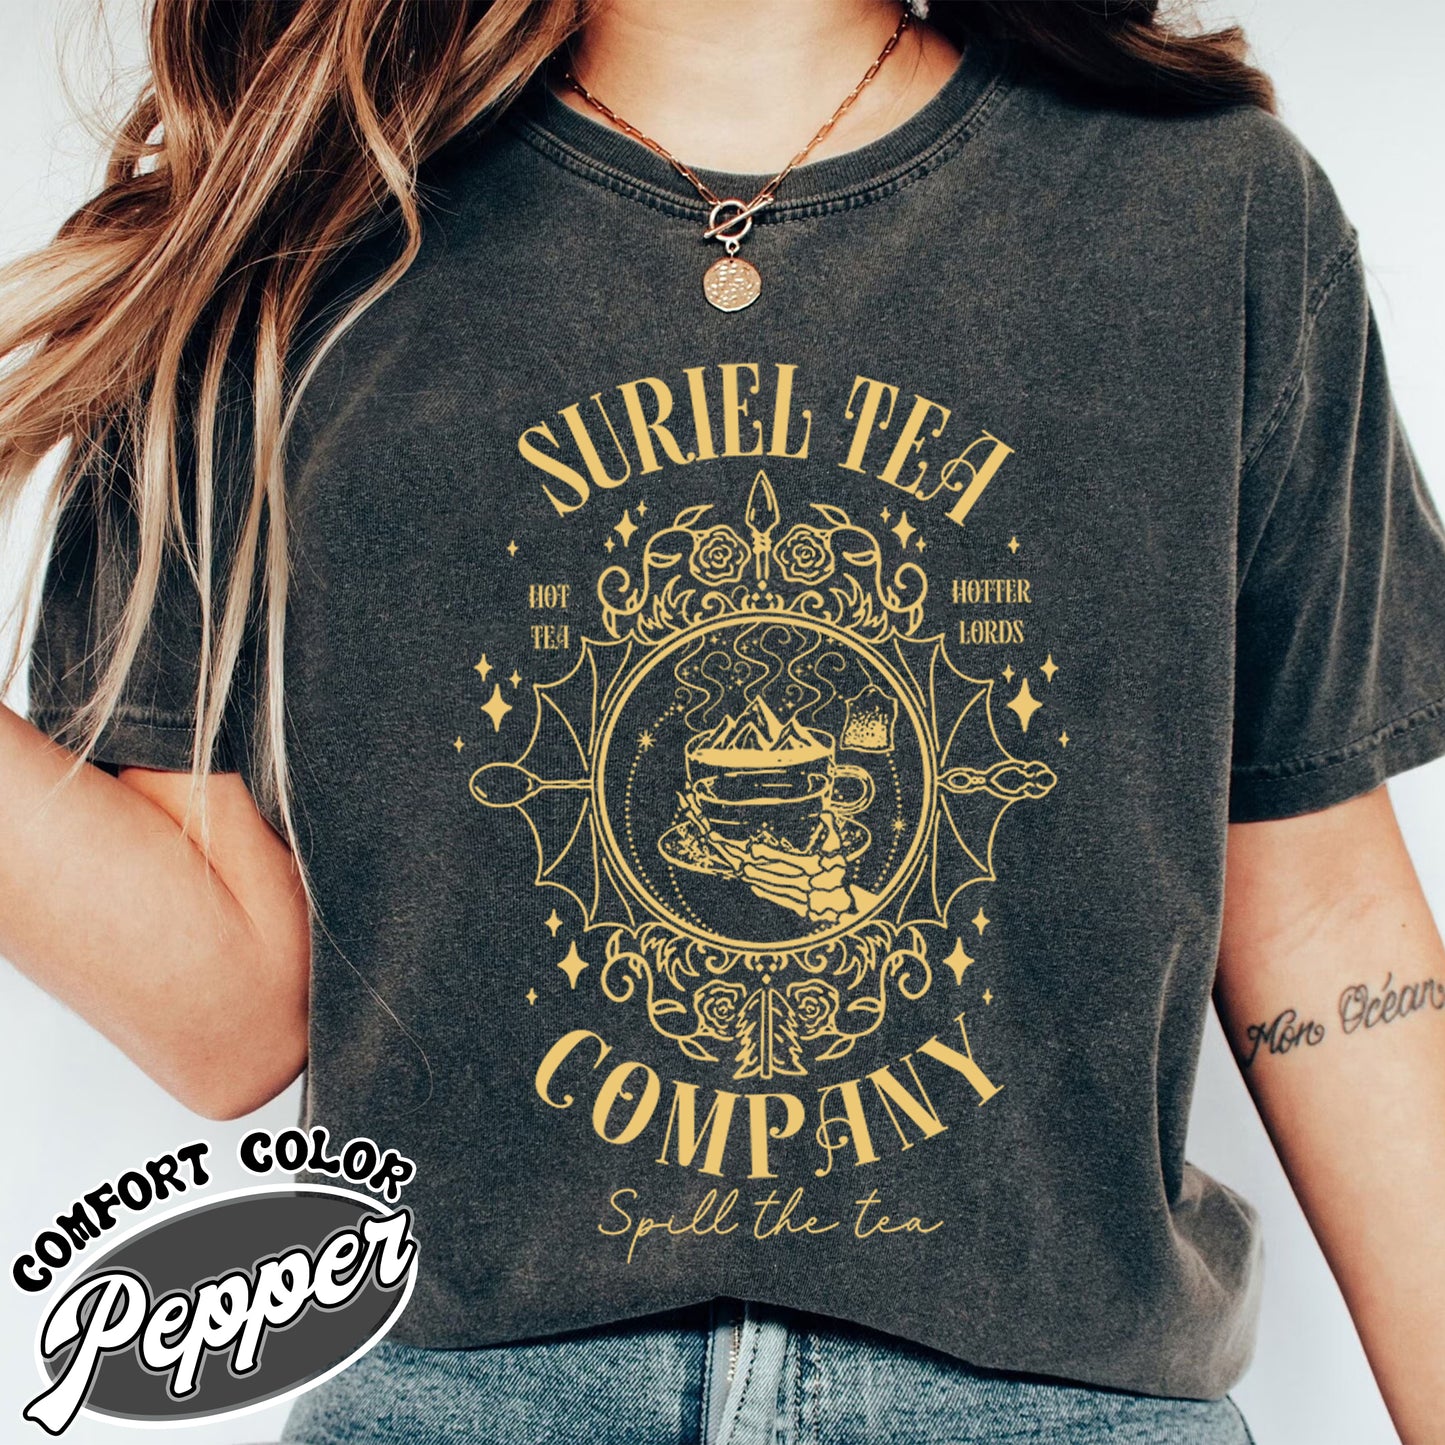 Suriel Tea Co Comfort Colors Shirt, Suriel Tea Co Tshirt, Suriel Tea Co Shirt, Acotar Shirt Suriel Tea Co, Suriel Tea Co Shirt, Bookish Gift